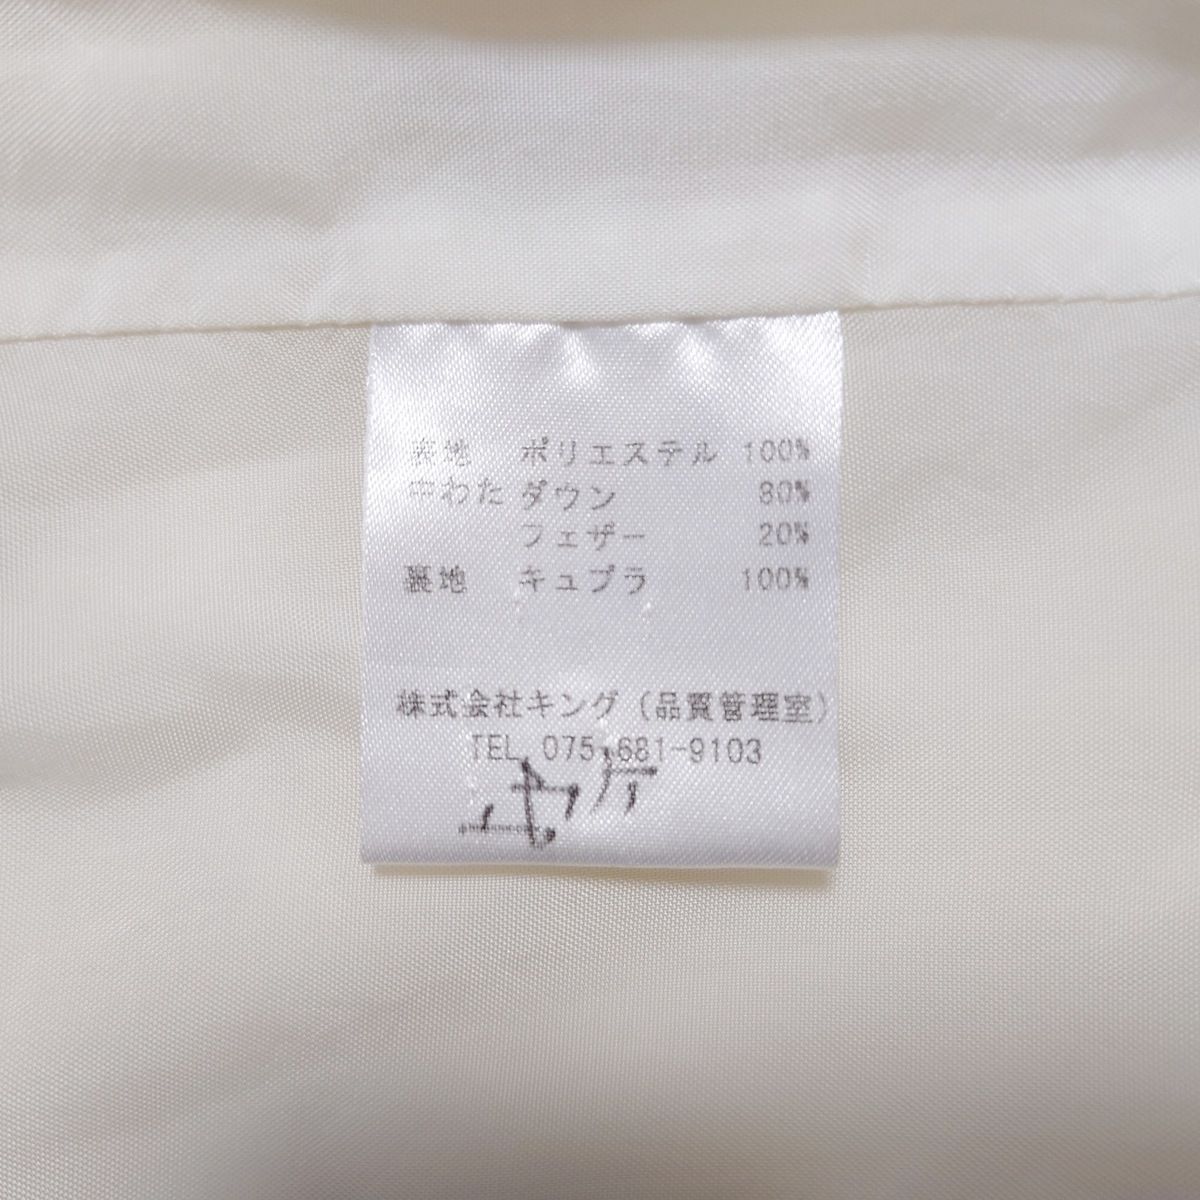 TRUSSARDI(トラサルディー) ダウンコート サイズ40 M レディース - 白 長袖/ジップアップ/秋/冬